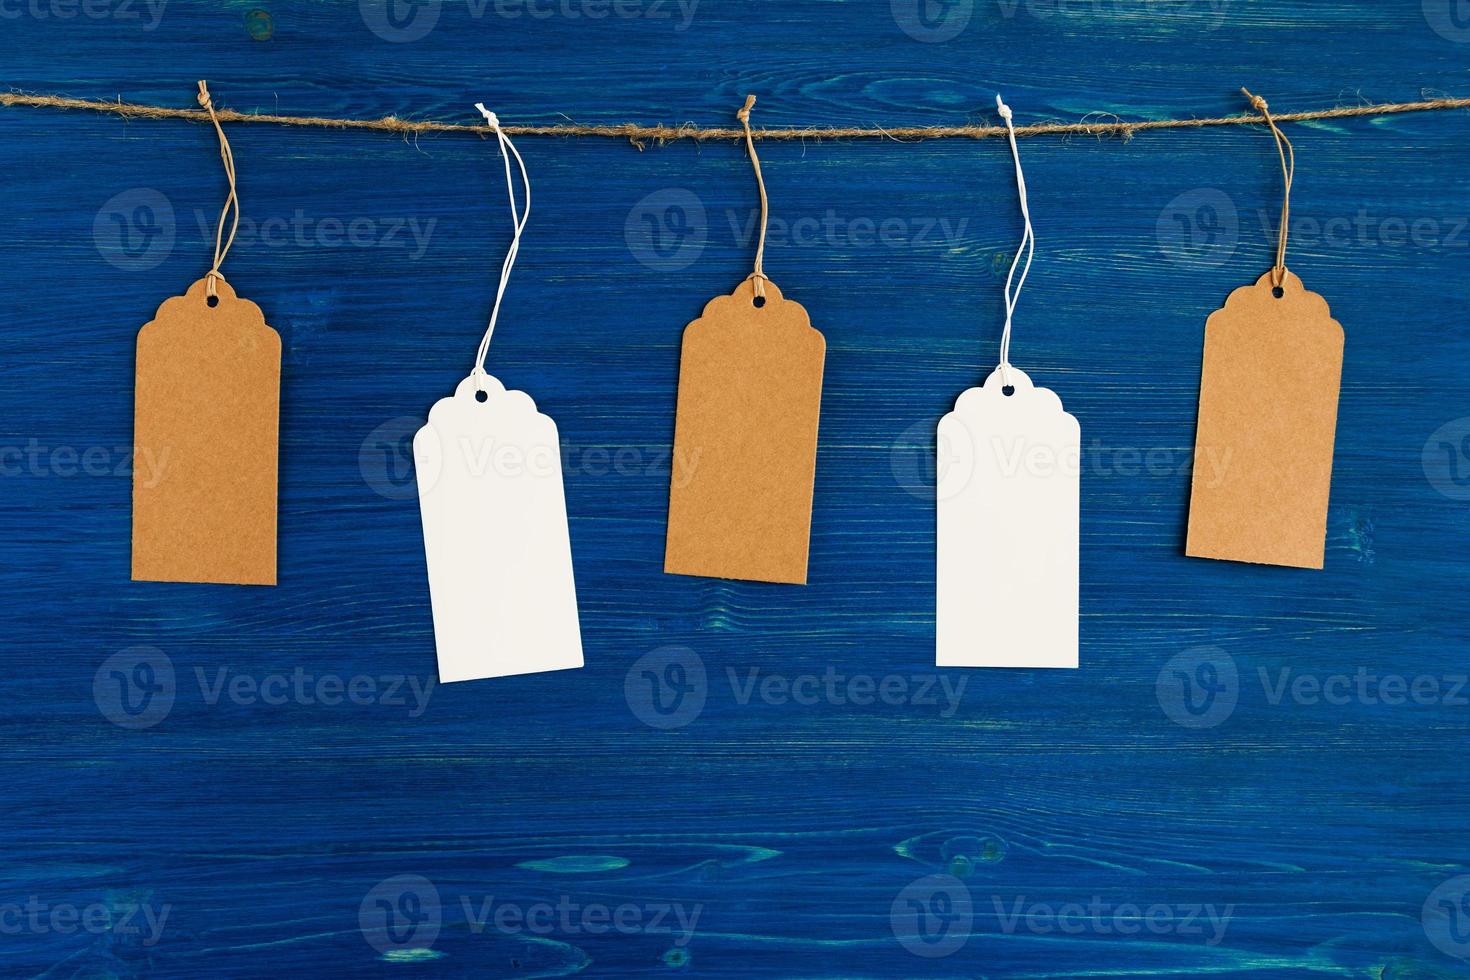 cinq étiquettes ou étiquettes de prix en papier vierge marron et blanc accrochées à une corde sur le fond en bois bleu. photo